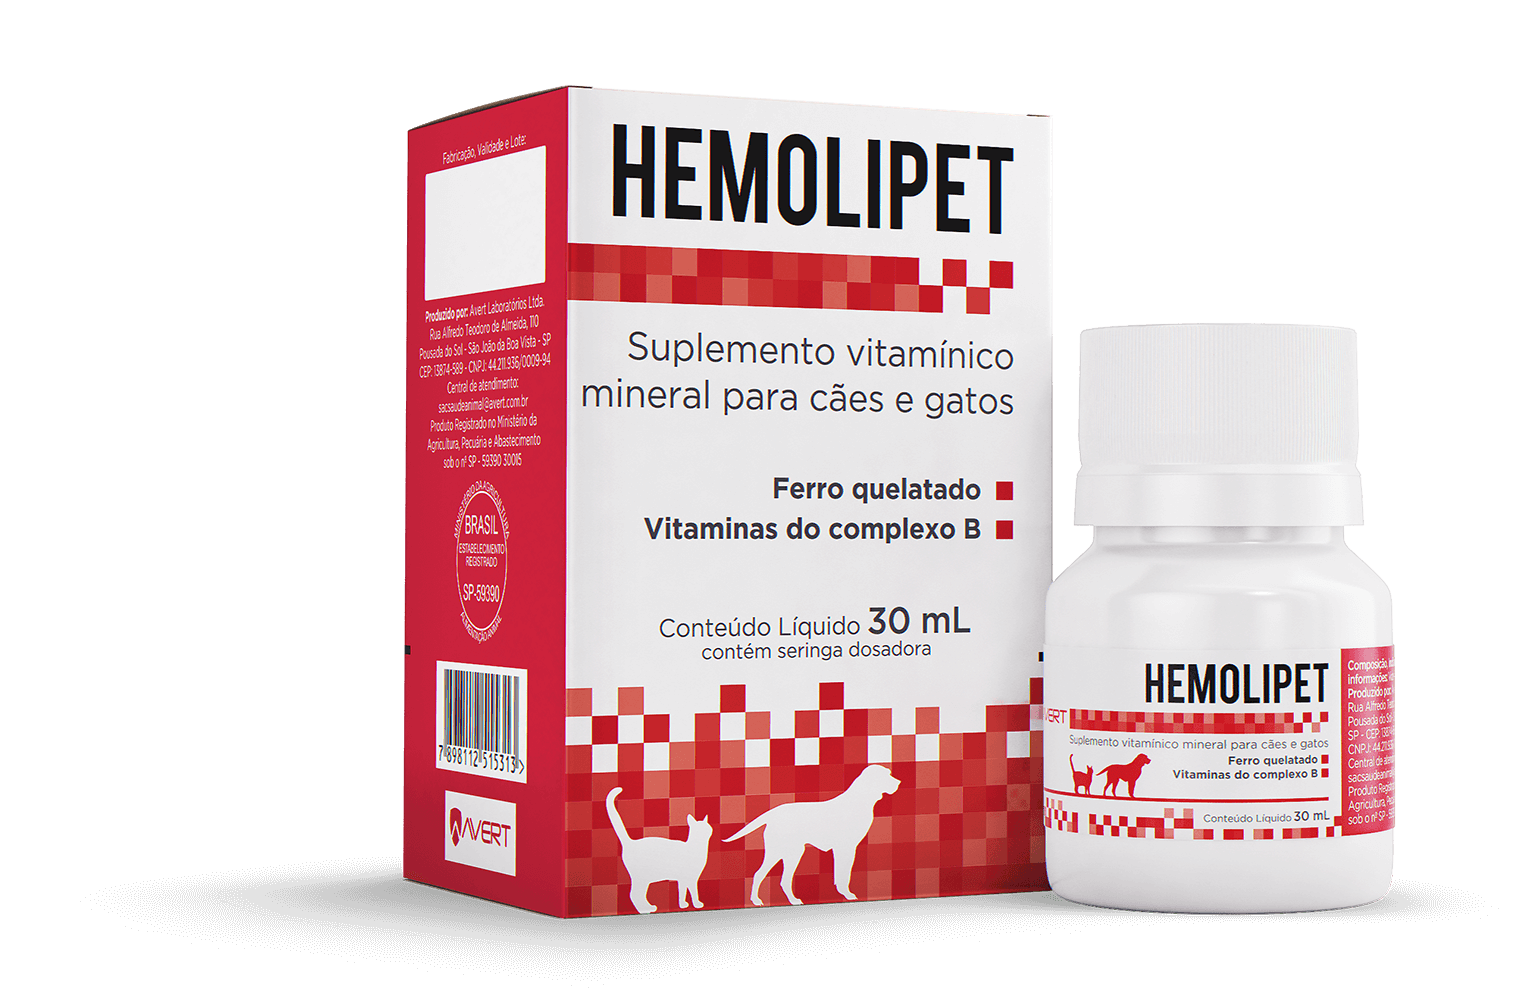 Suplemento Vitamínico Mineral para Cães e Gatos Hemolipet